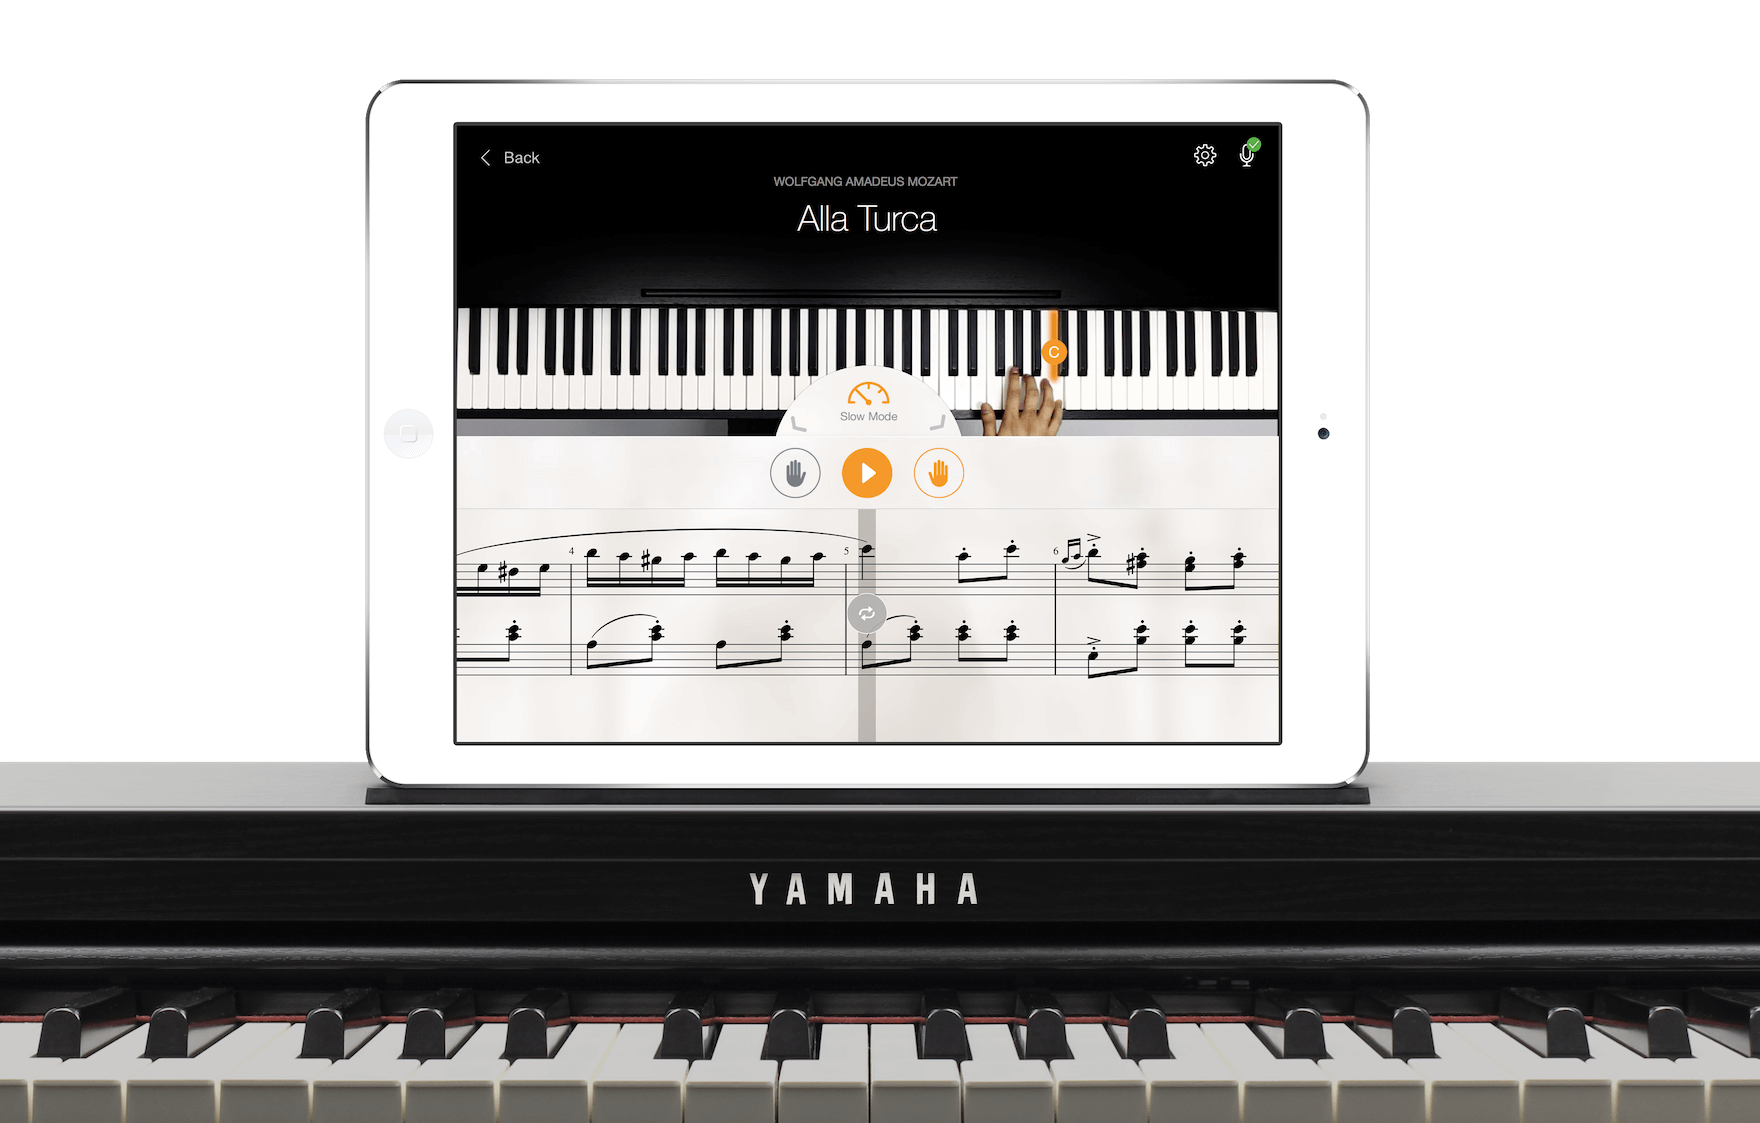 La perfecta de empezar a tocar el piano. Seleccione un instrumento Yamaha, active la app y aprenda su primera canción en solo